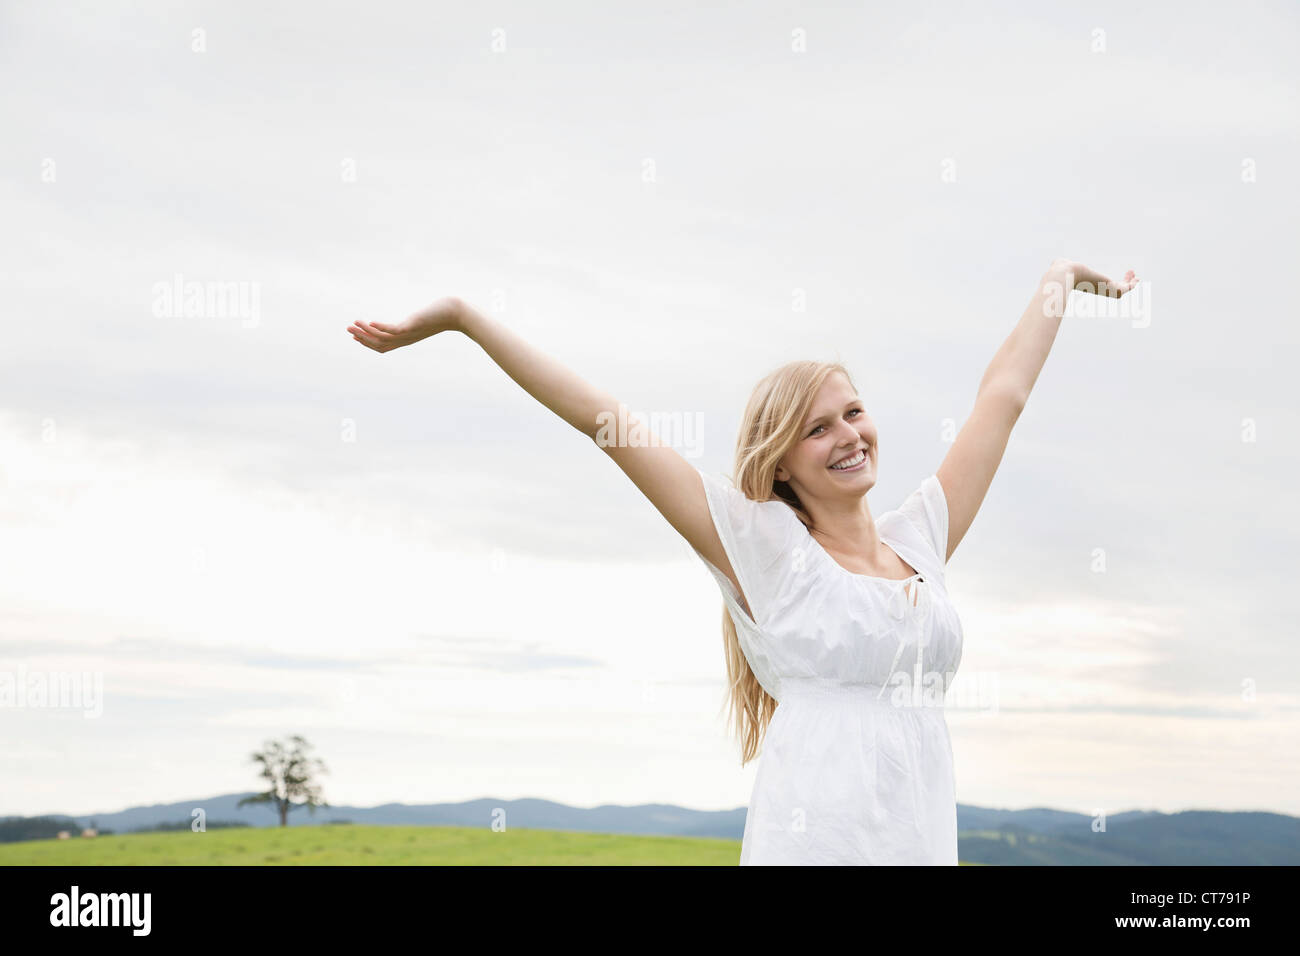 Jeune femme sur prairie d'élever ses bras en l'air Banque D'Images